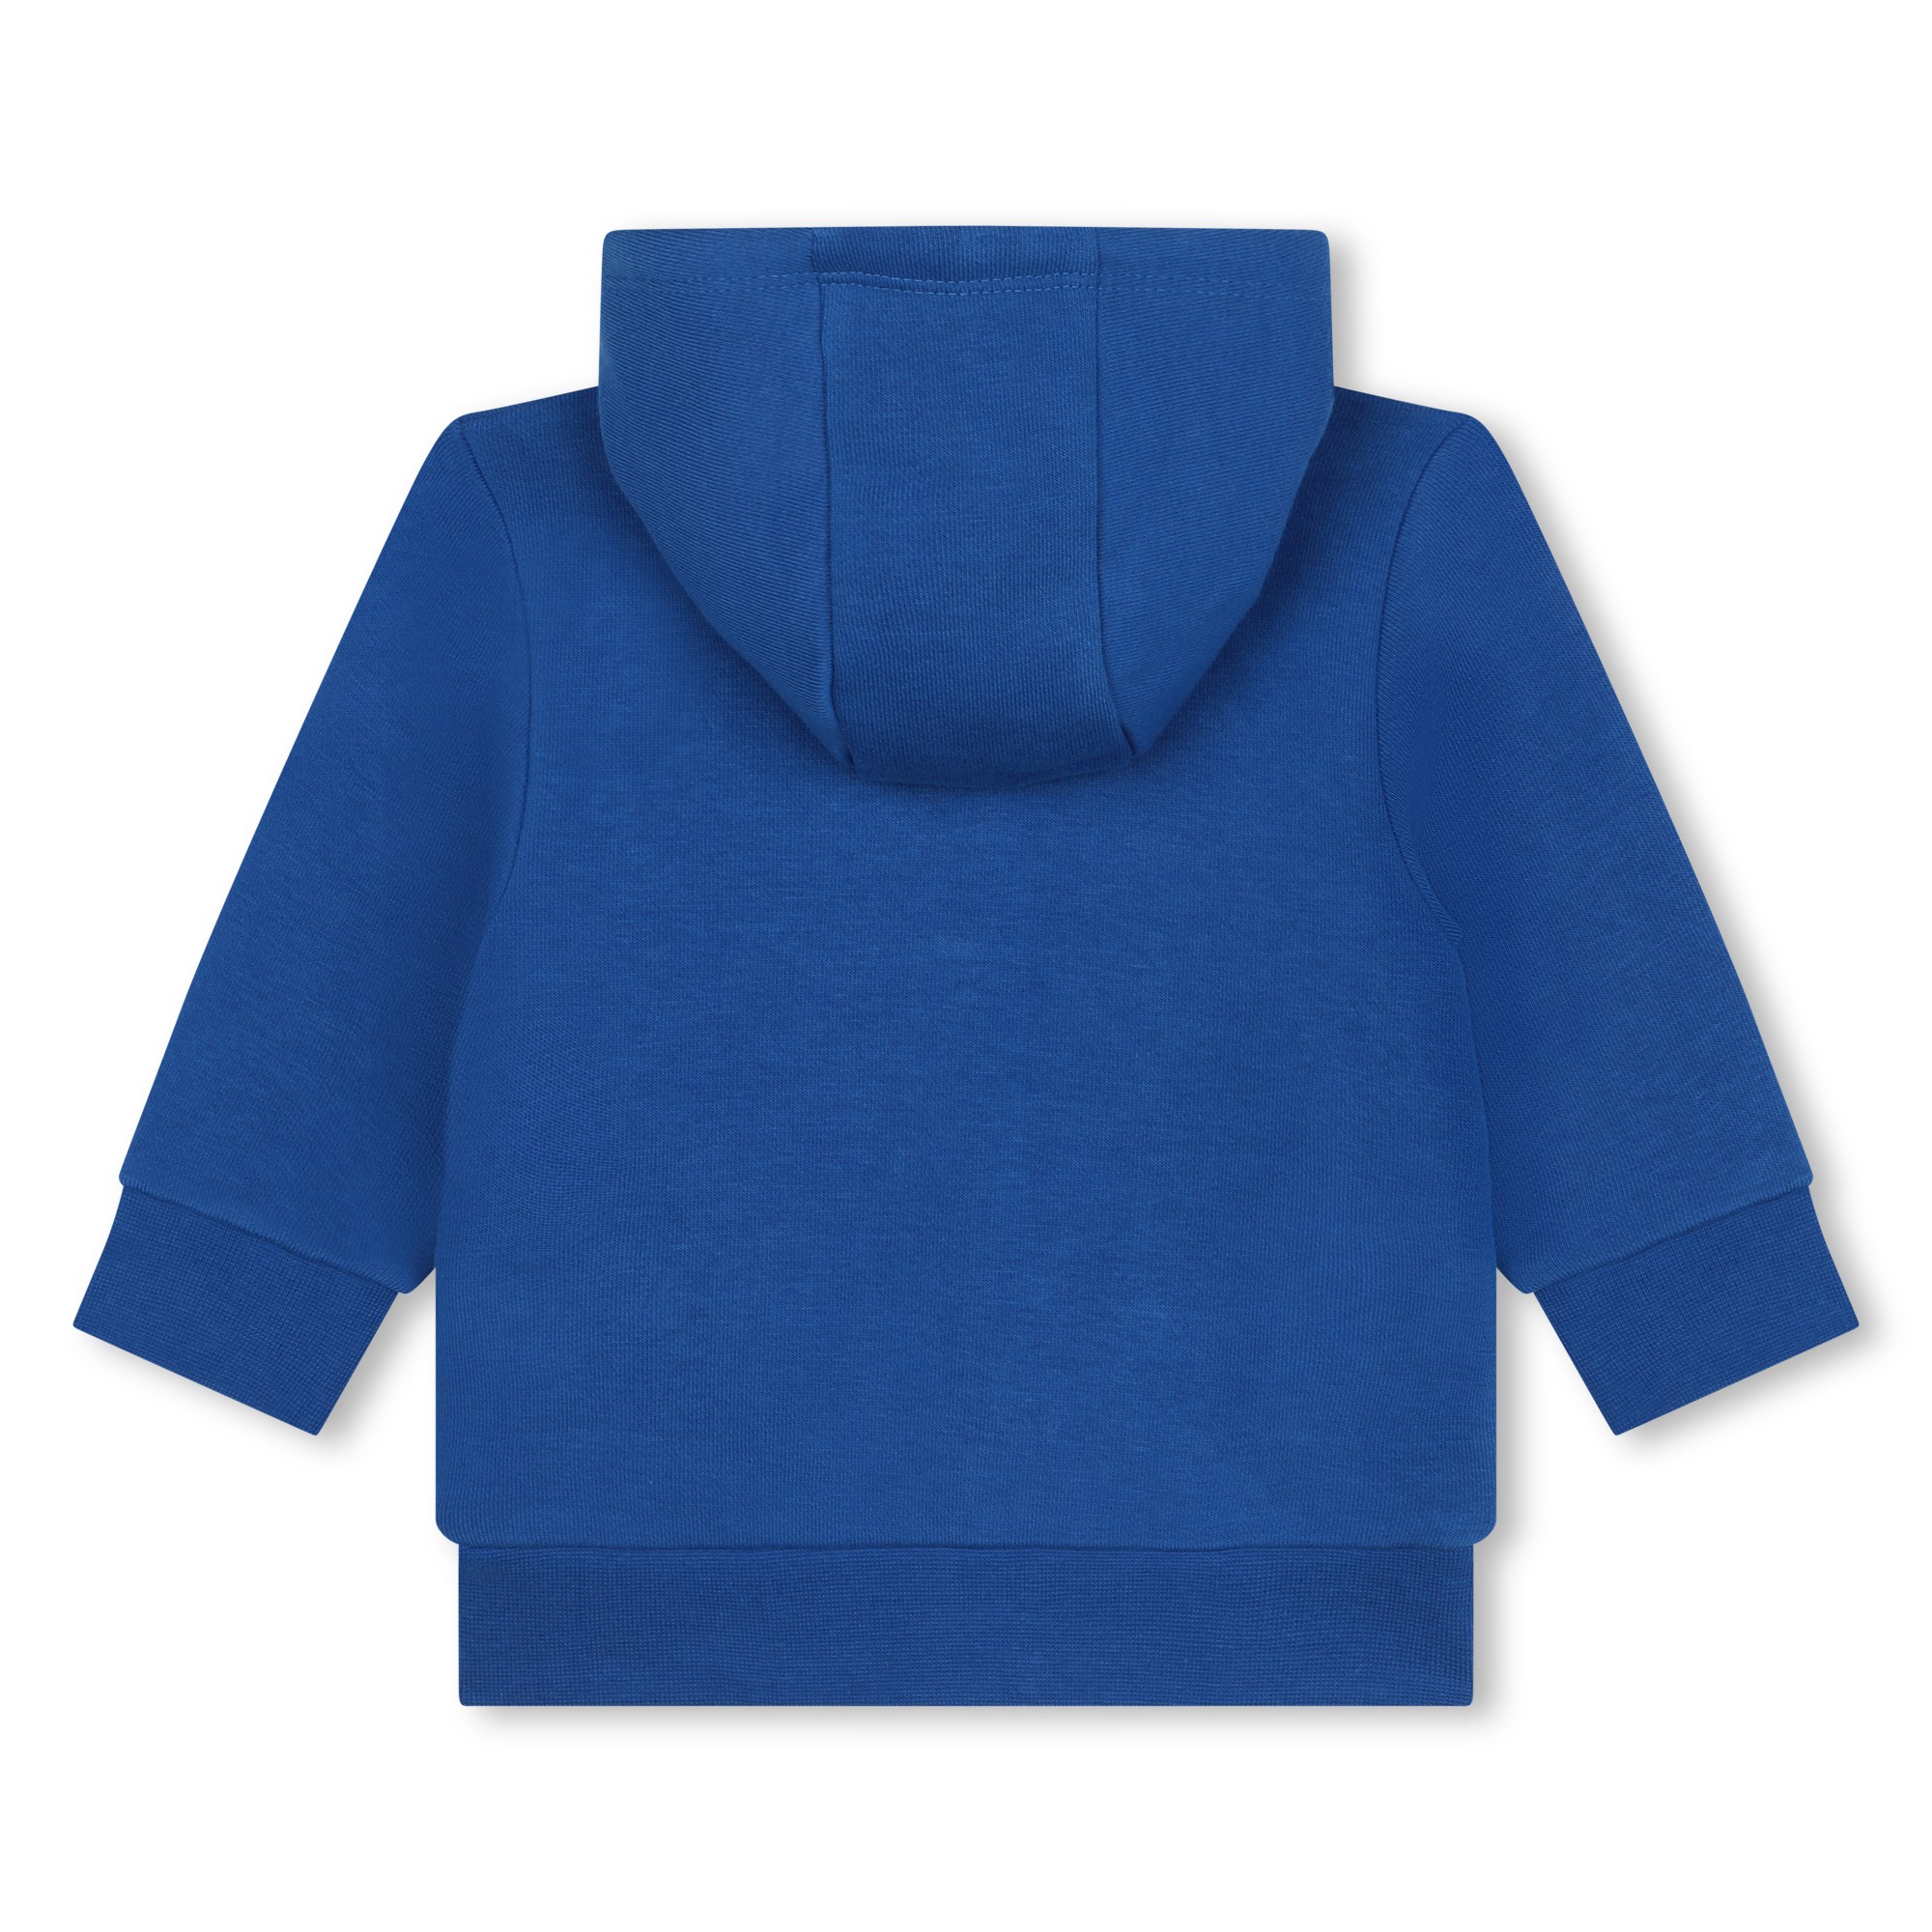 Sweater mit Zip und Logo BOSS Für JUNGE